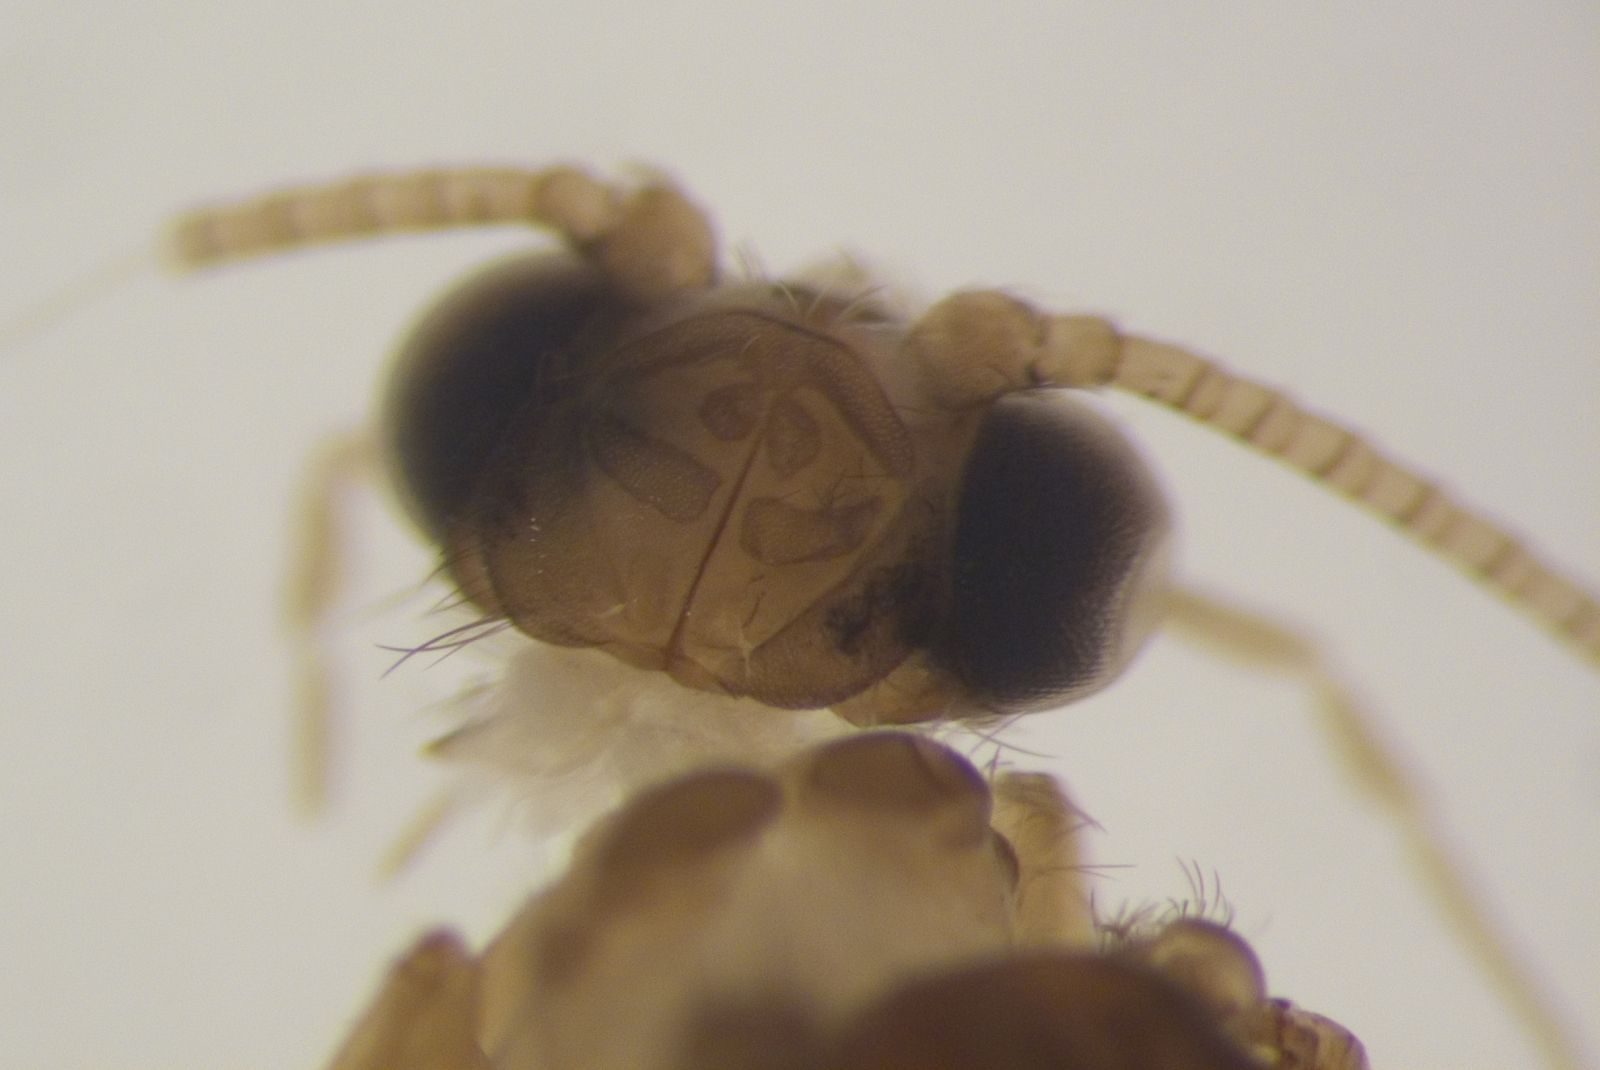 Este es el insecto hallado por un grupo de científicos sevillanos en el parque de Los Alcornocales, en Cádiz.